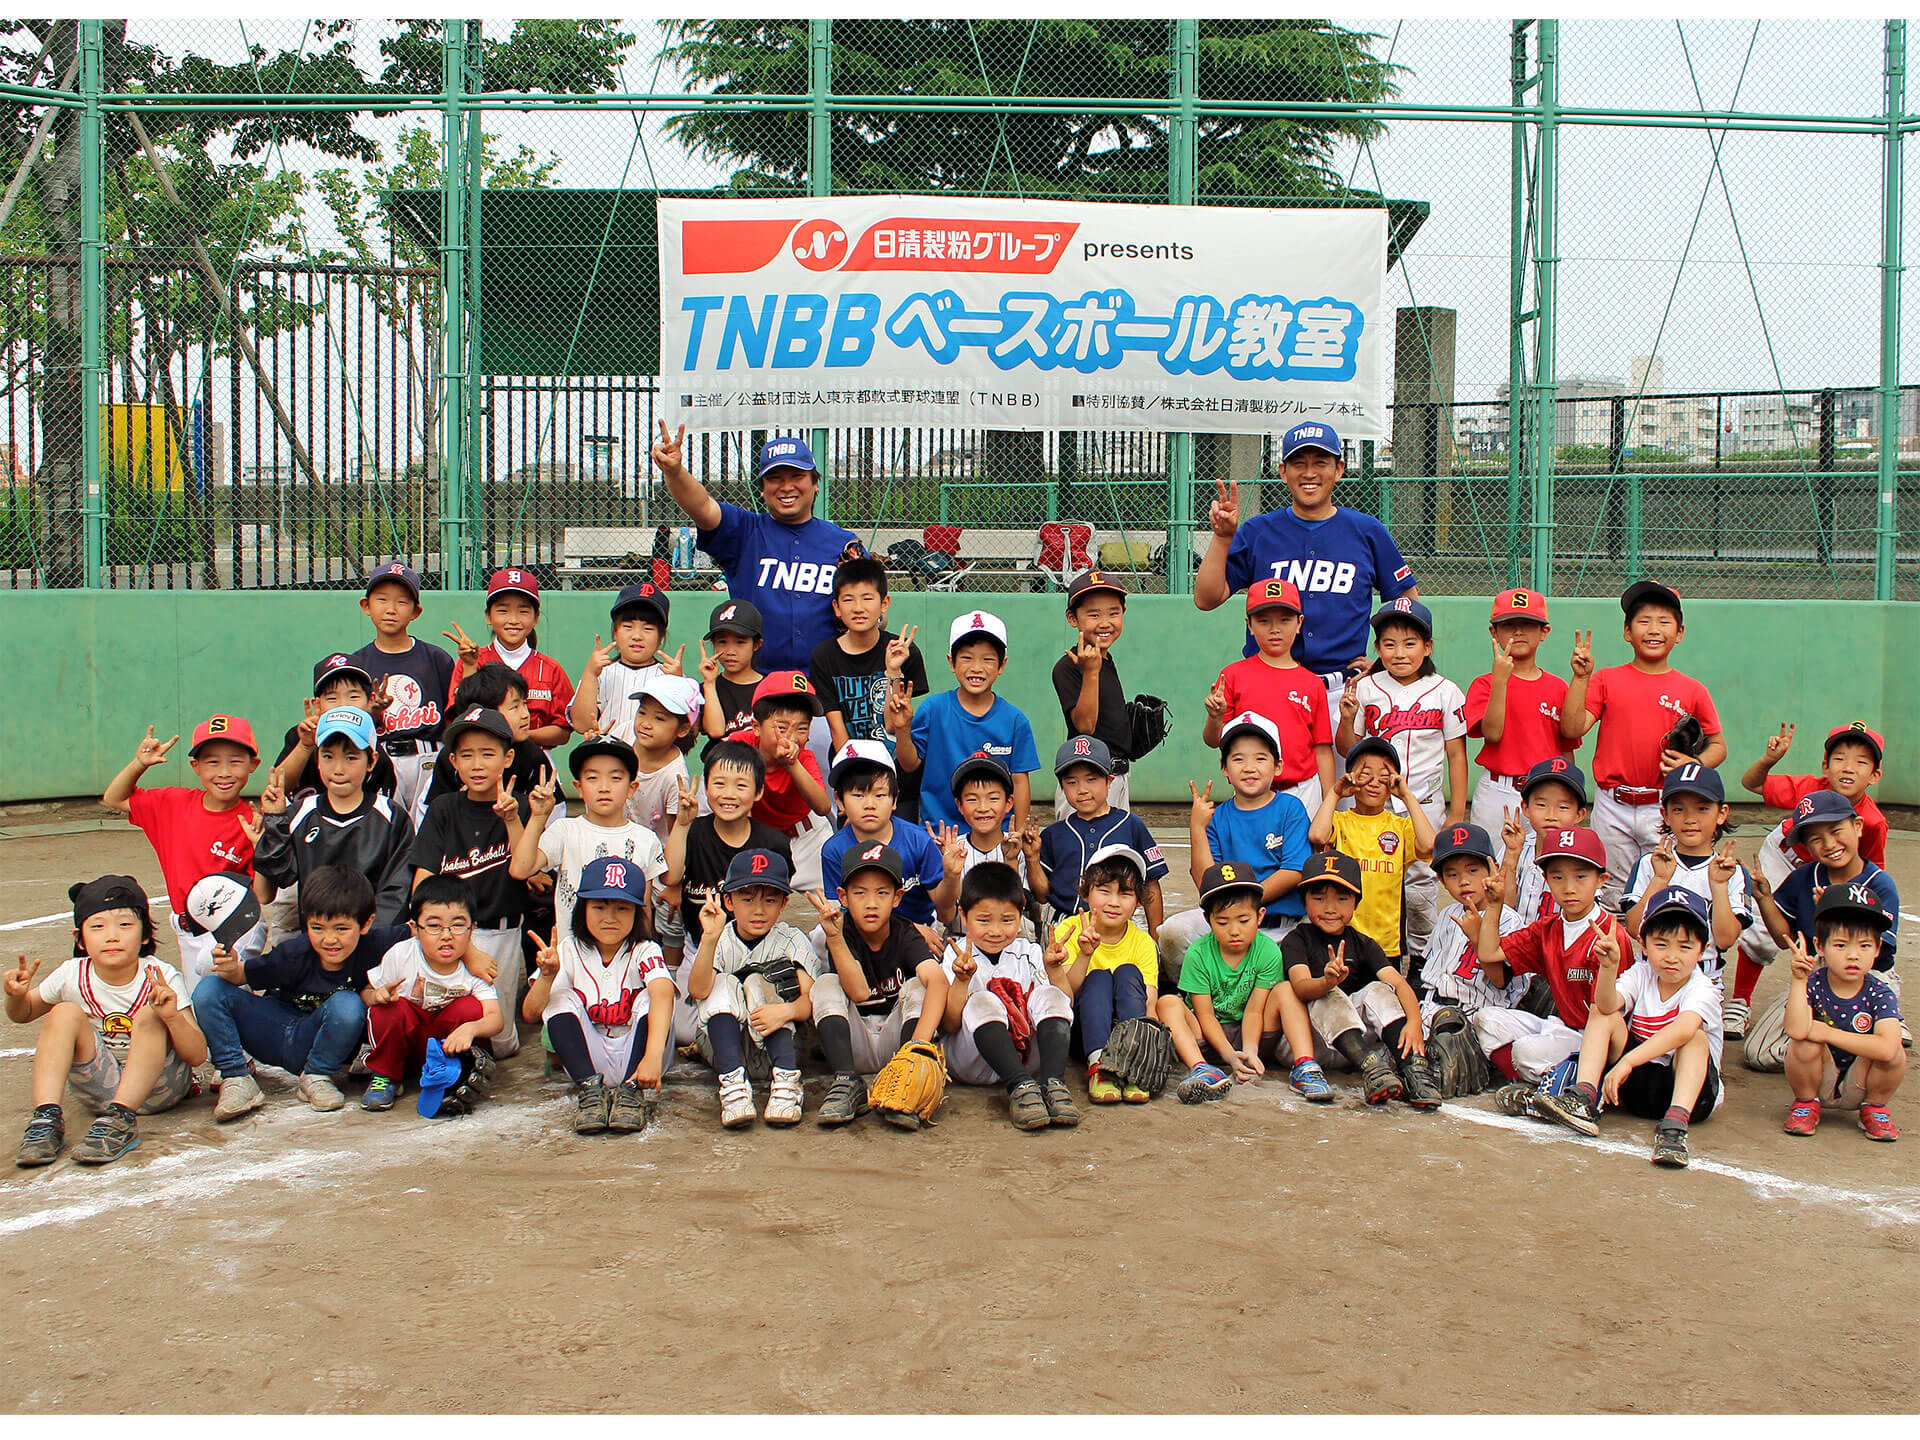 参加した子どもたち45人は講師の西崎氏、里崎氏とピースサイン